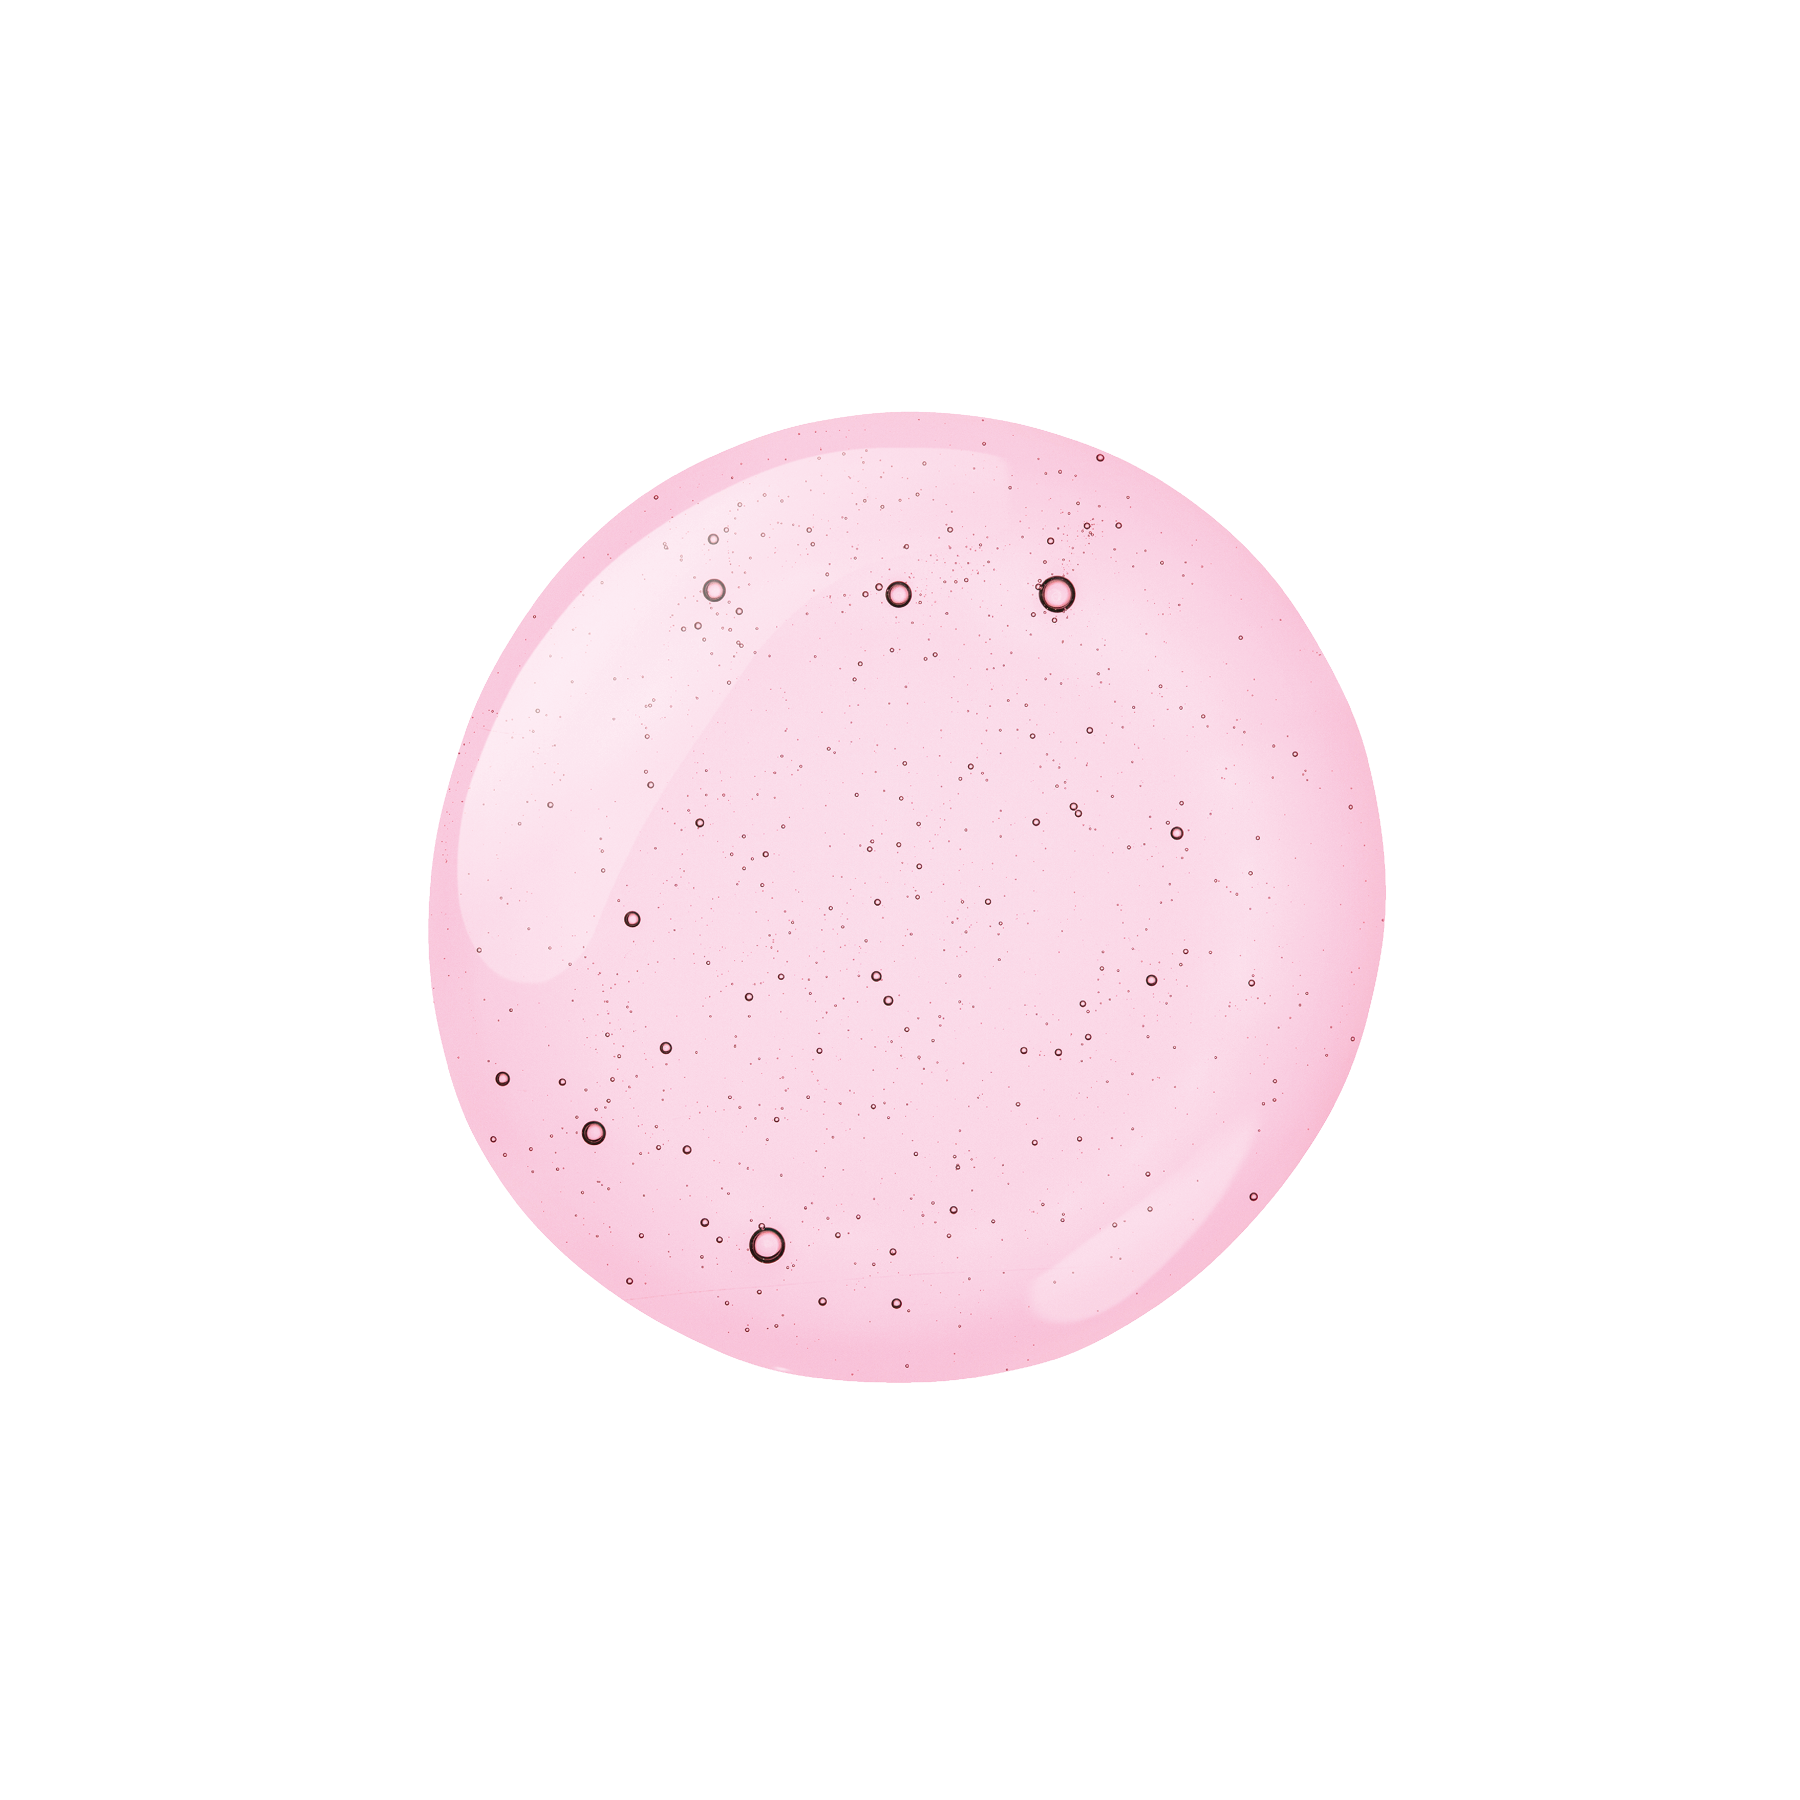 Ukviat розовая антистрессовая сыворотка для лица, 30 мл